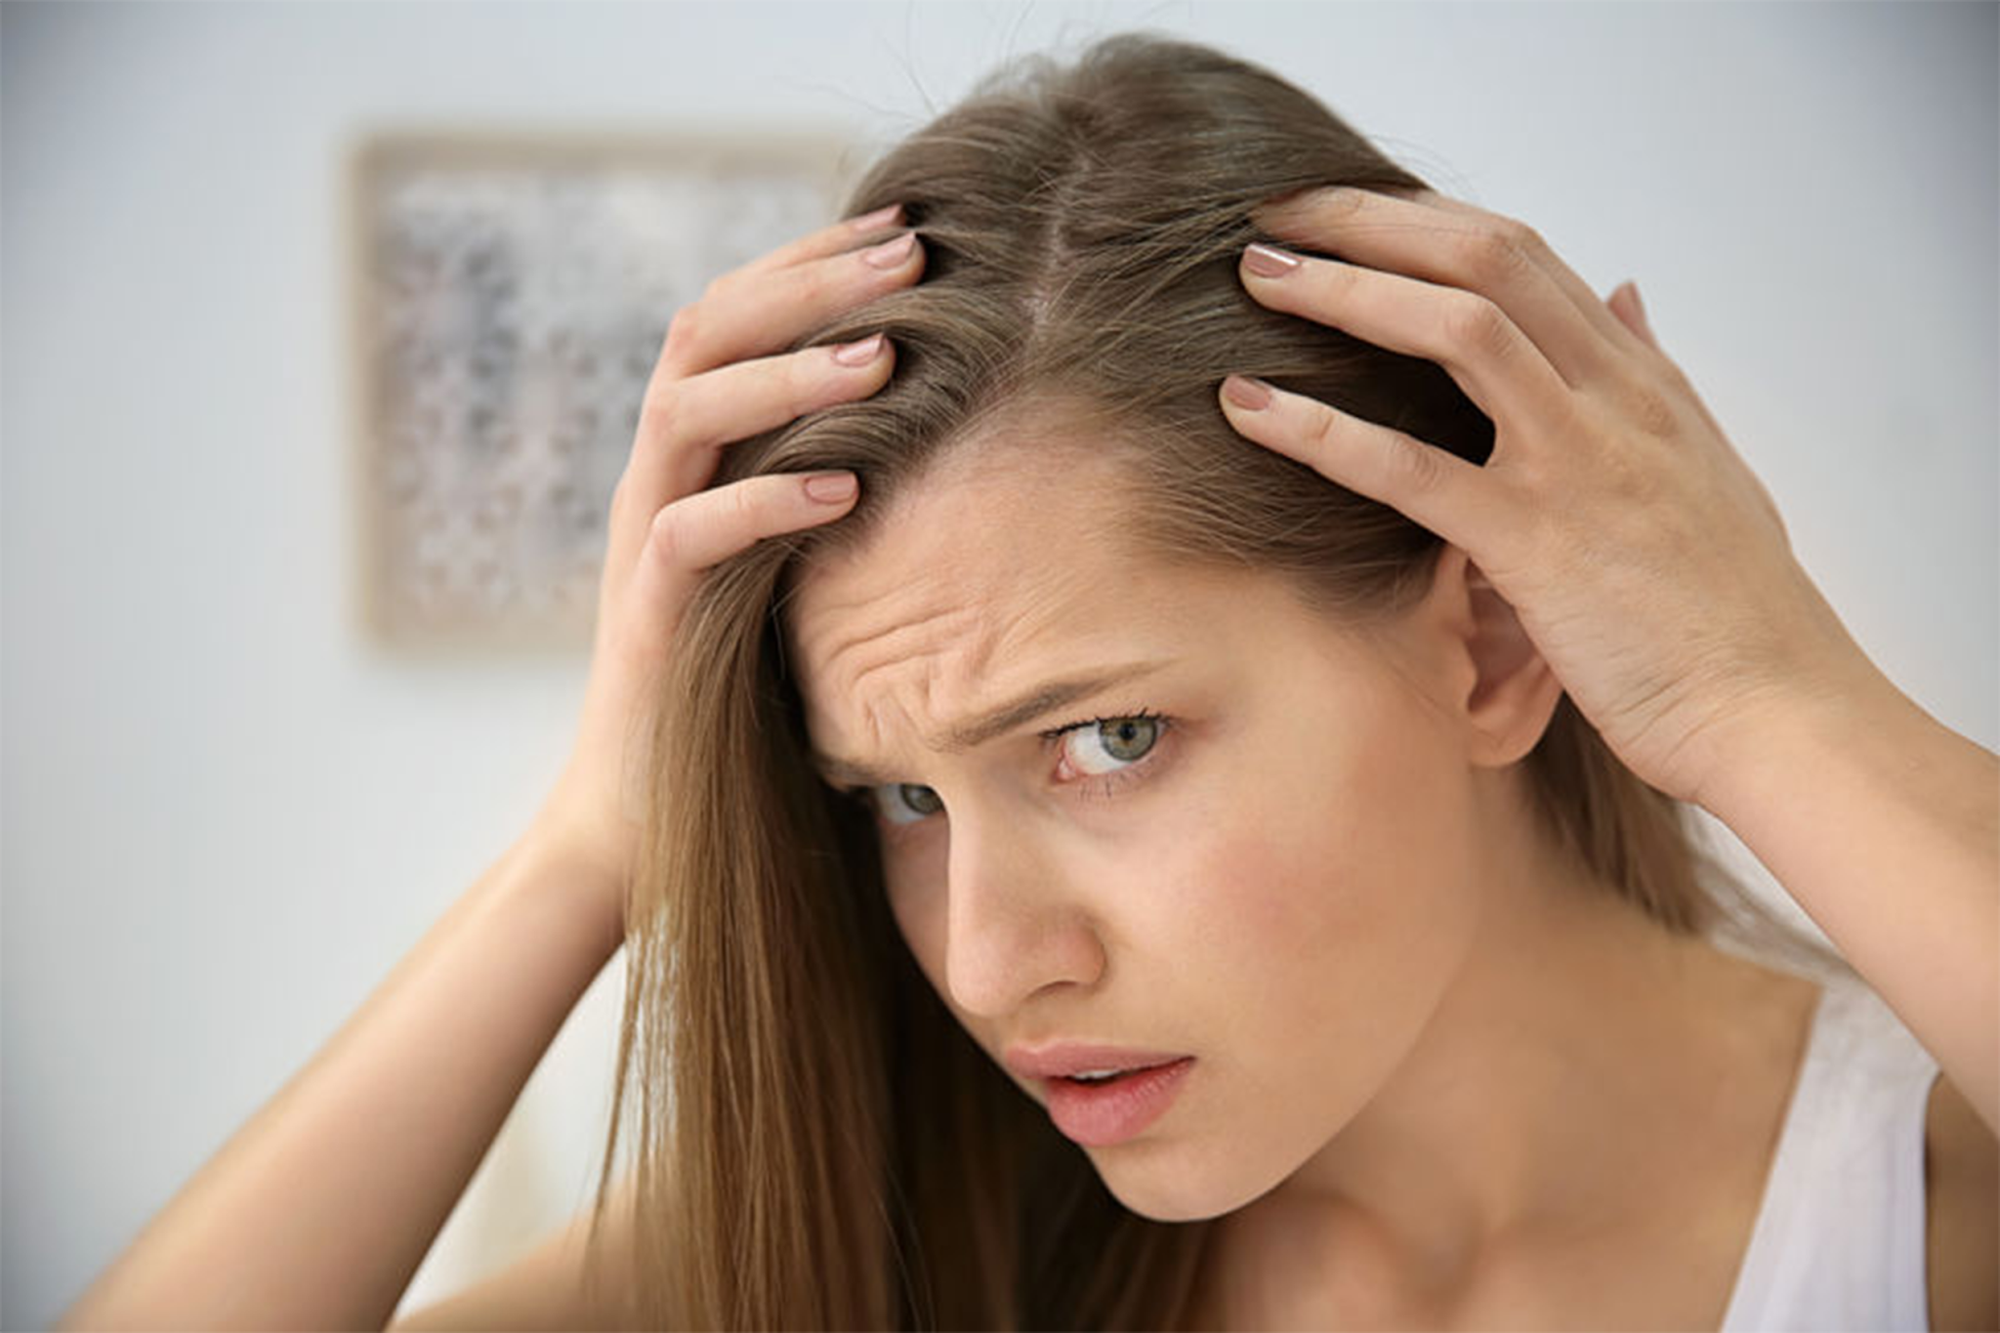 تساقط الشعر أحد الأعراض الهامة للإصابة بـ"كوفيد - 19"